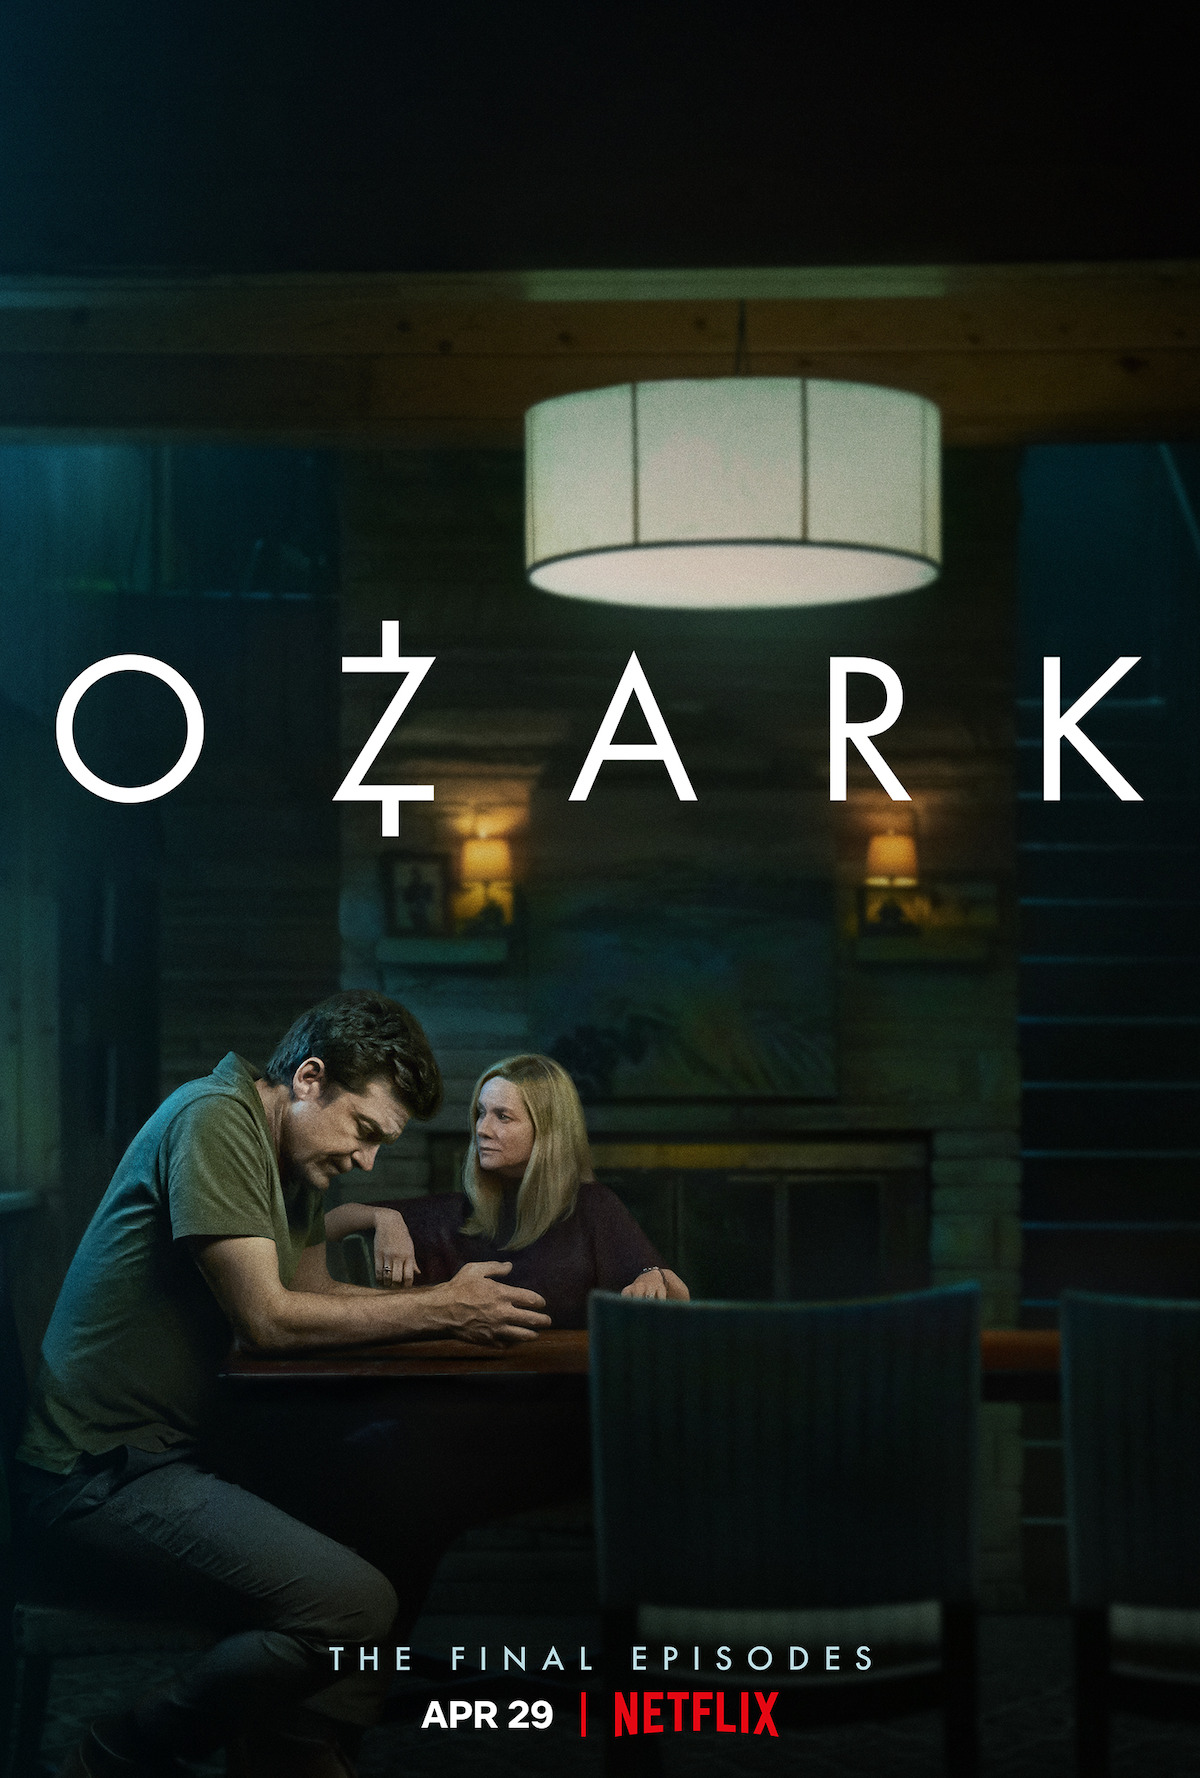 Ozark' Season 4 Part 2: Netflix Releases Trailer, Announces